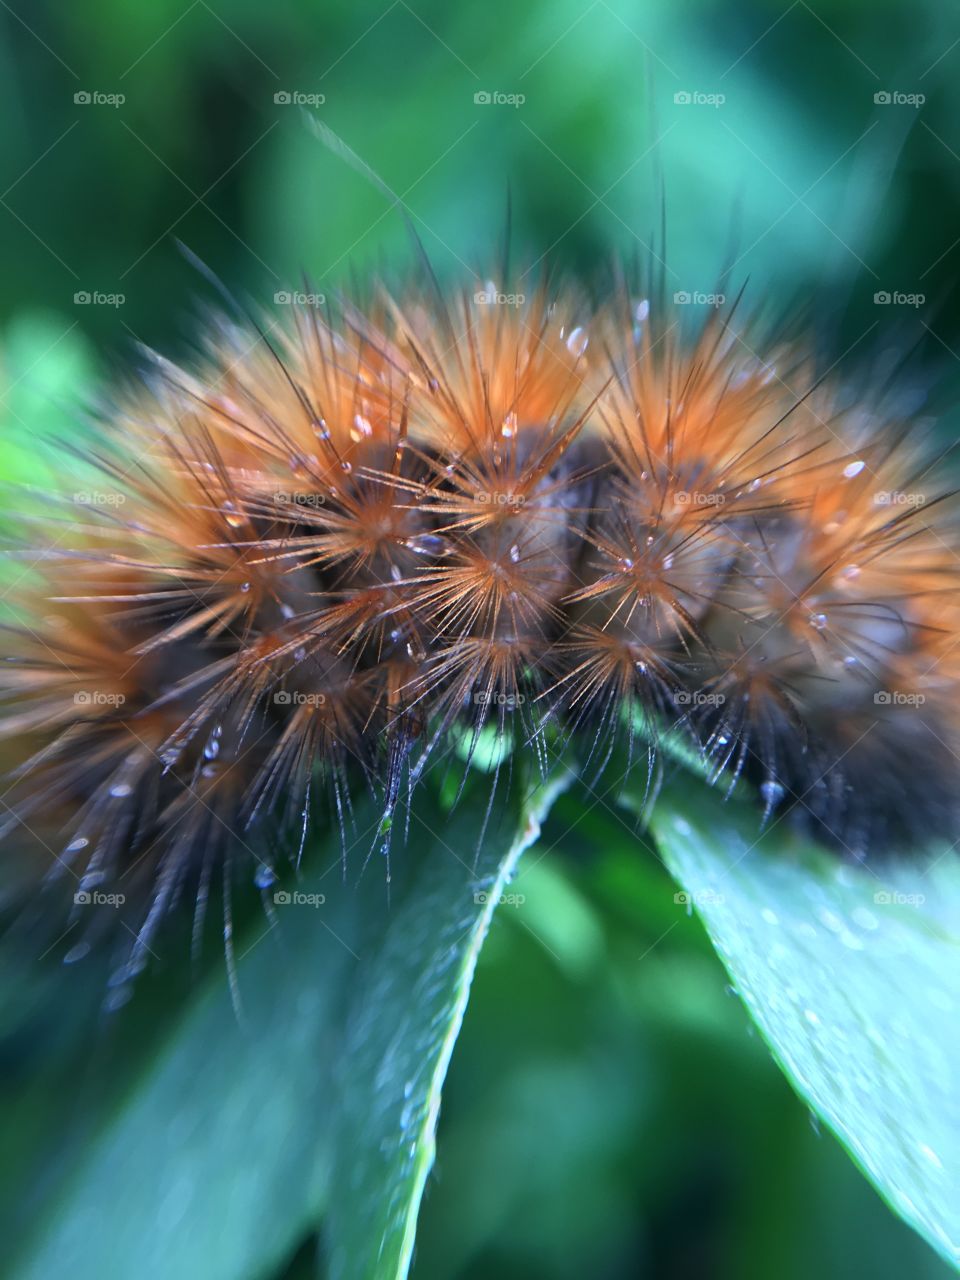 Caterpillar fur